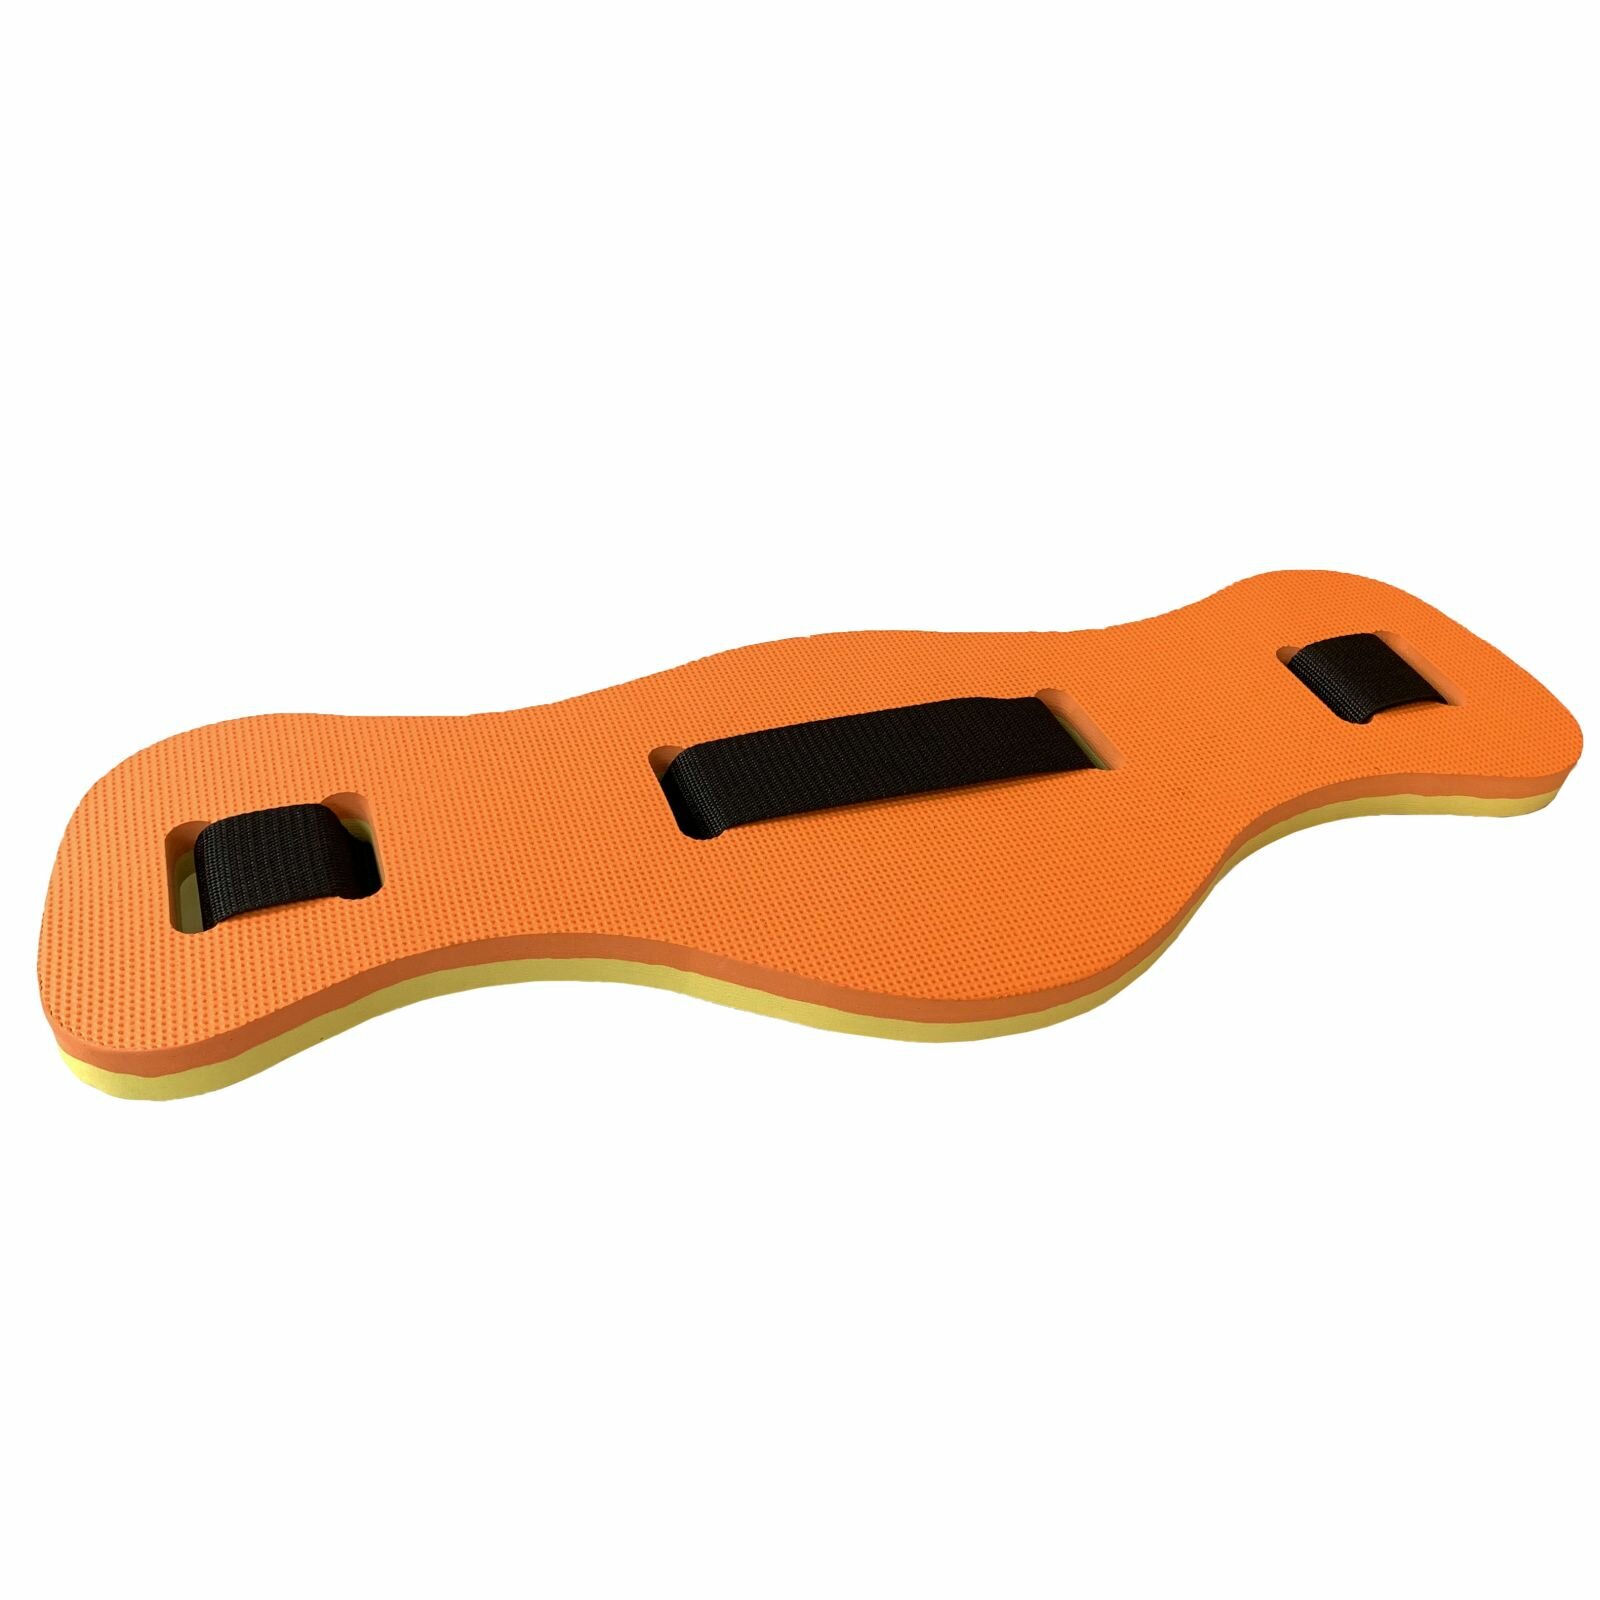 Пояс страховочный 2-х цветный 62х22х23 см для аквааэробики E39341 (оранжево/желтый)